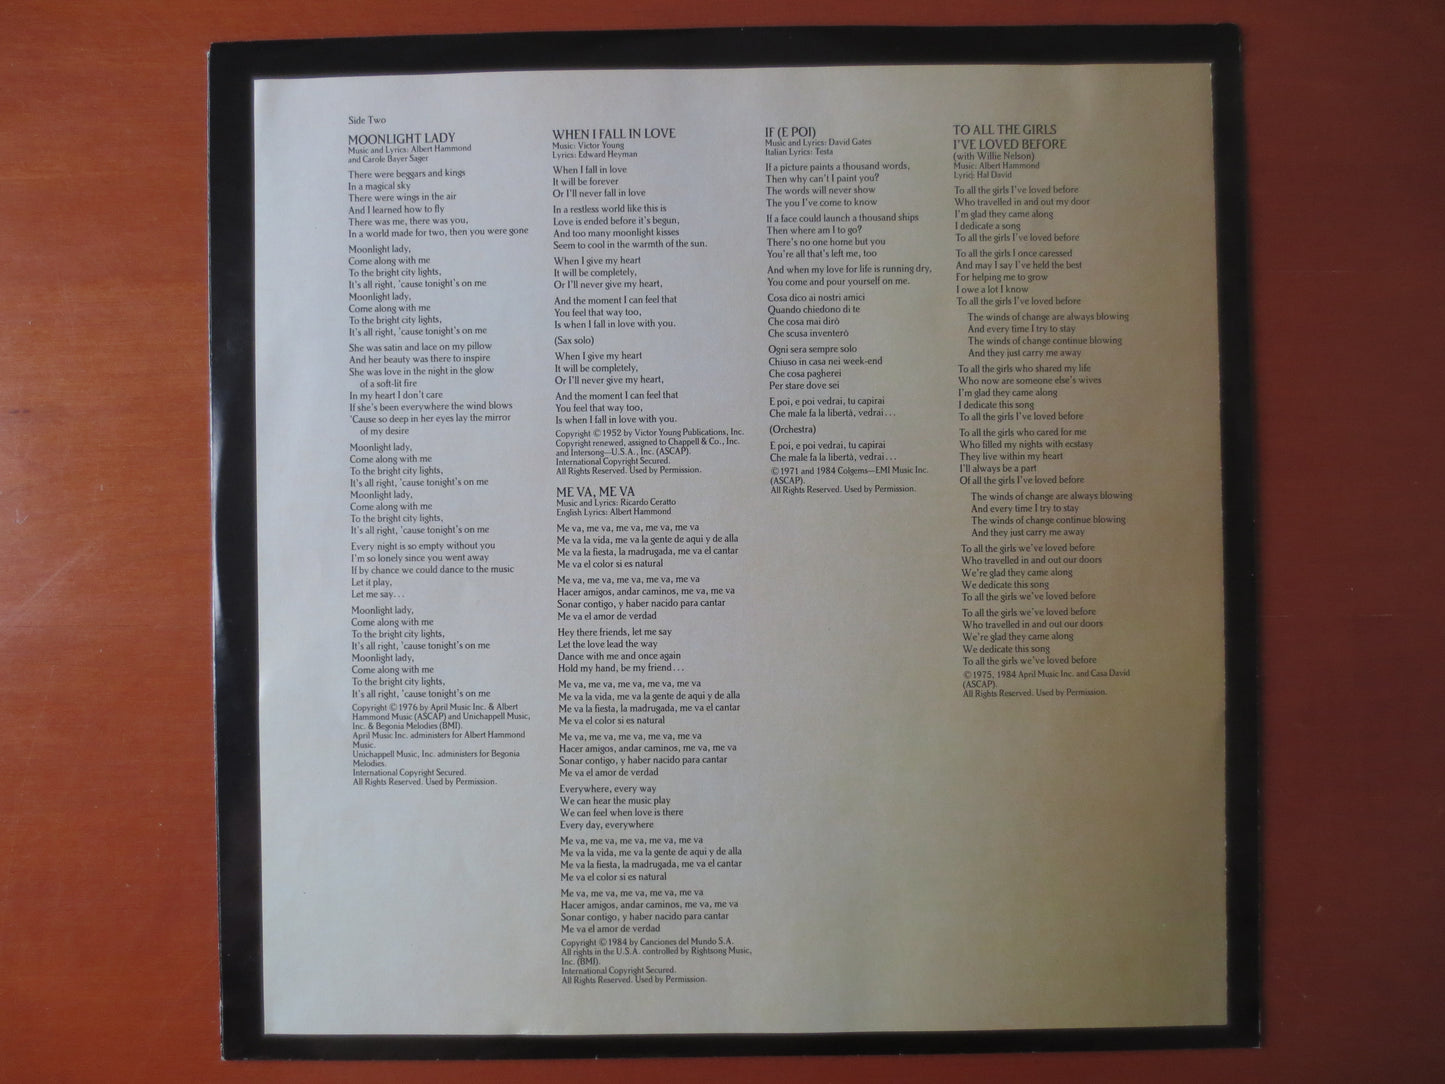 JULIO IGLESIAS, 1100 BEL Air Place, Pop Record, Julio Iglesias Music, Julio Iglesias Album, Vinyl Record, lps, 1984 Records